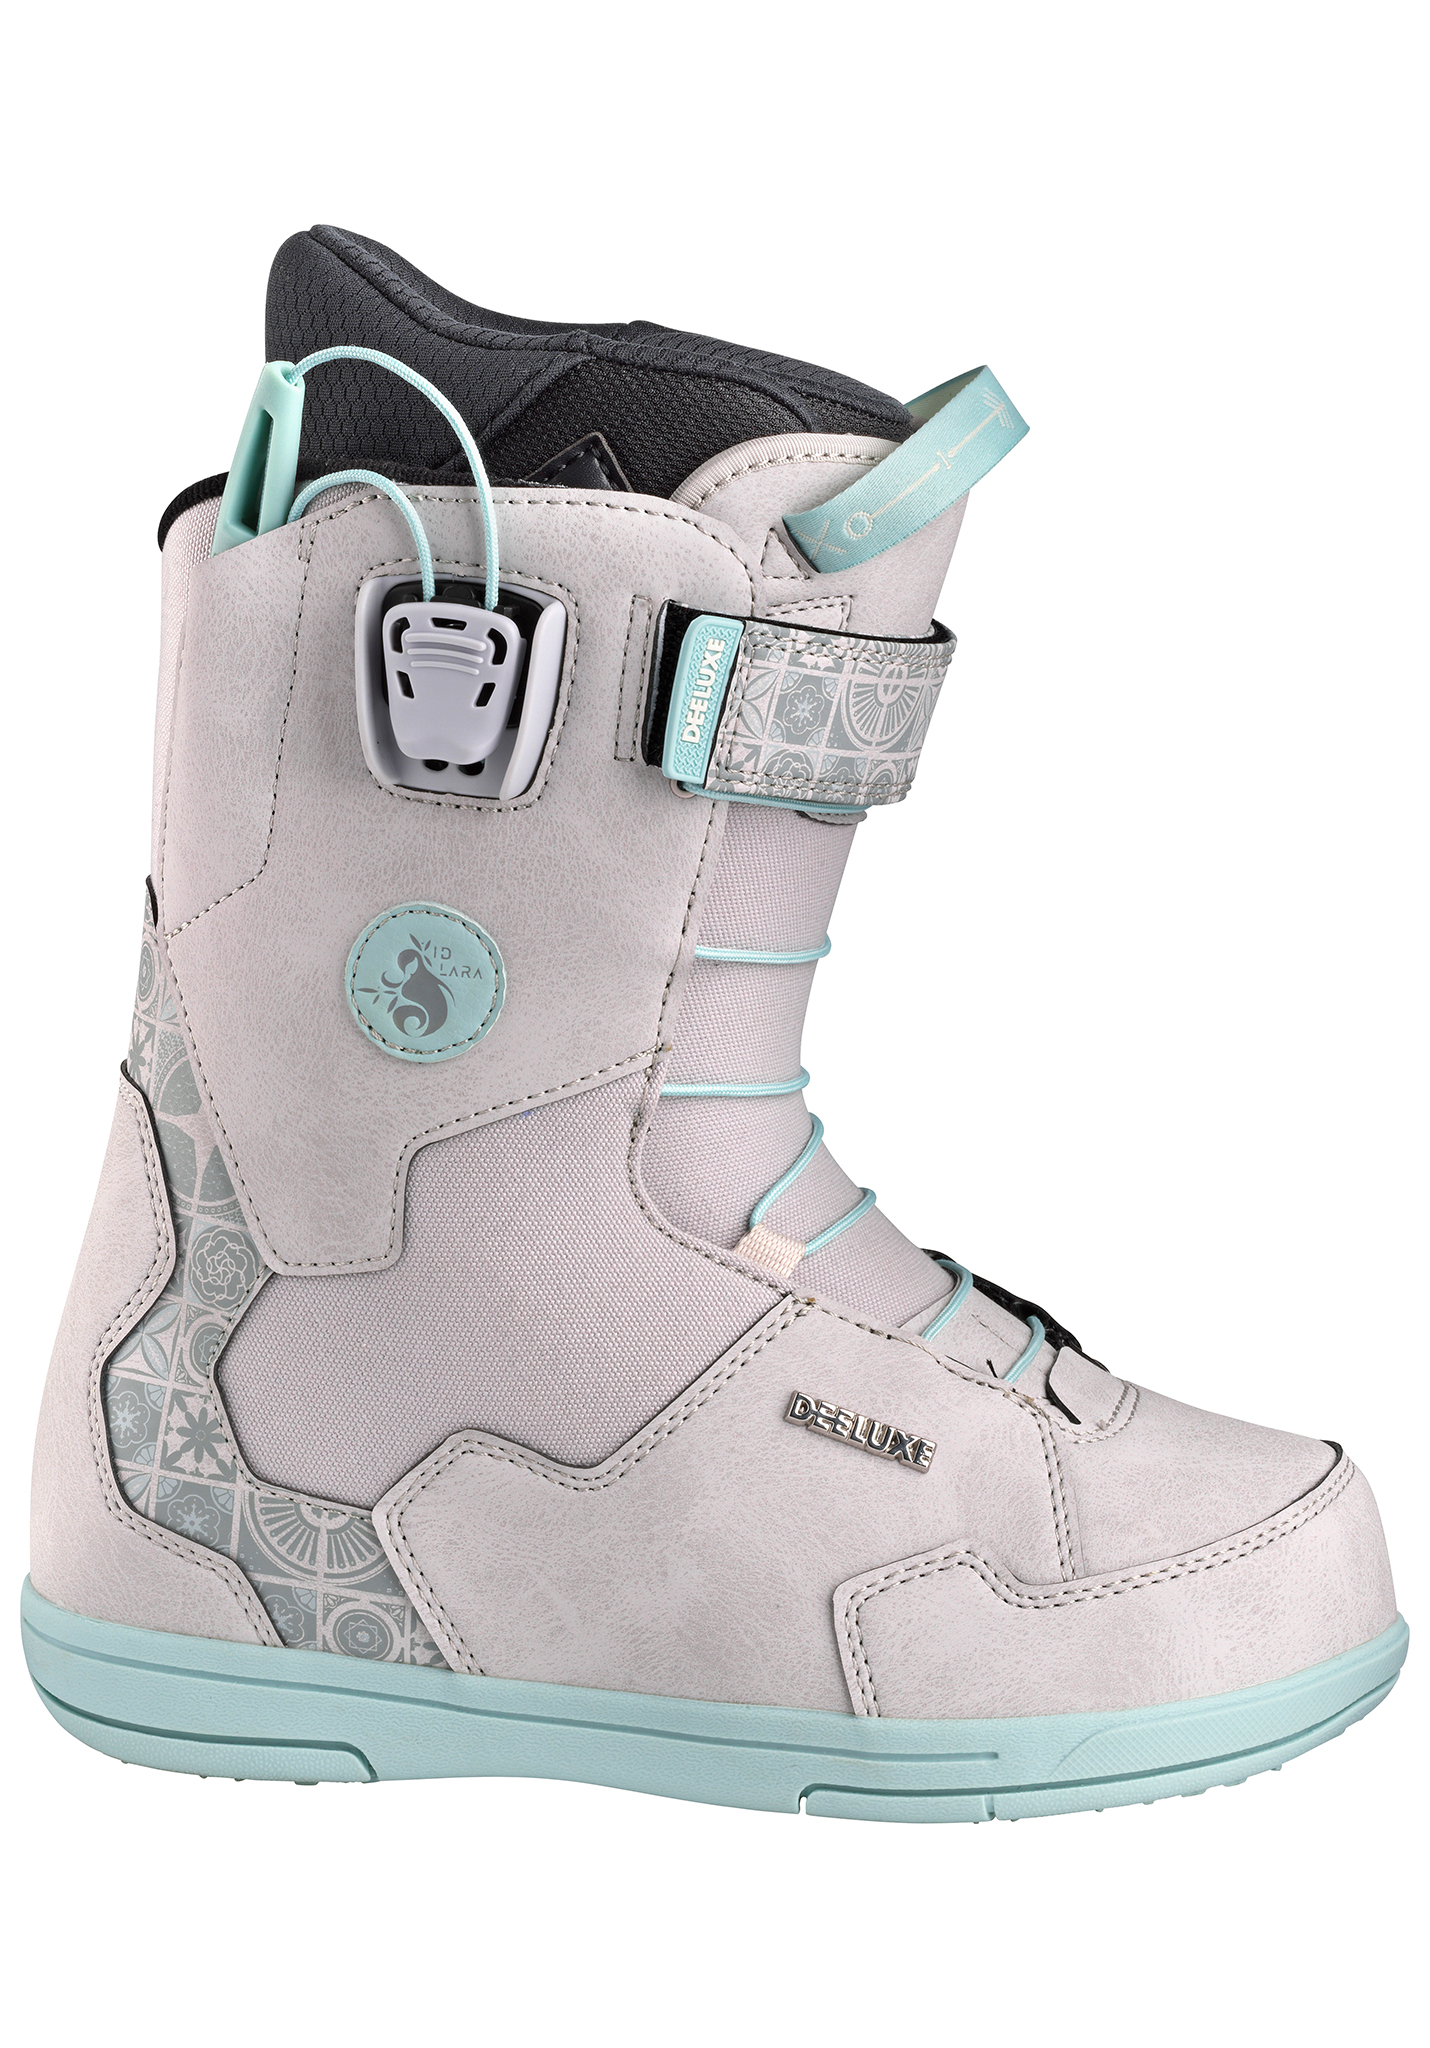 Deeluxe ID Lara LTD. PF Snowboard Boots graues mosaik 40,5